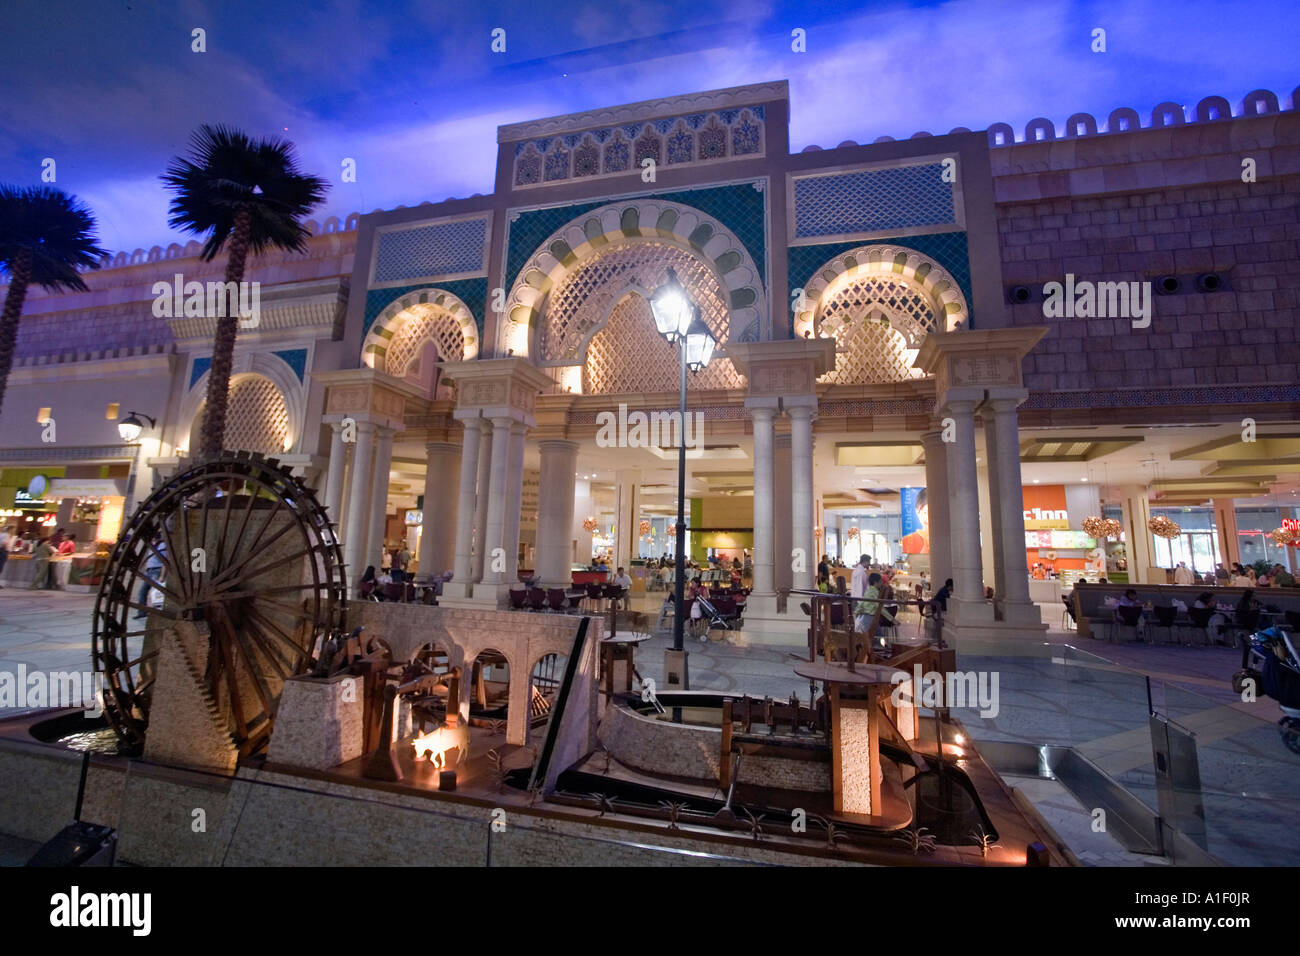 Dubai Ibn Battuta Mall Tunesian style interieur Stock Photo